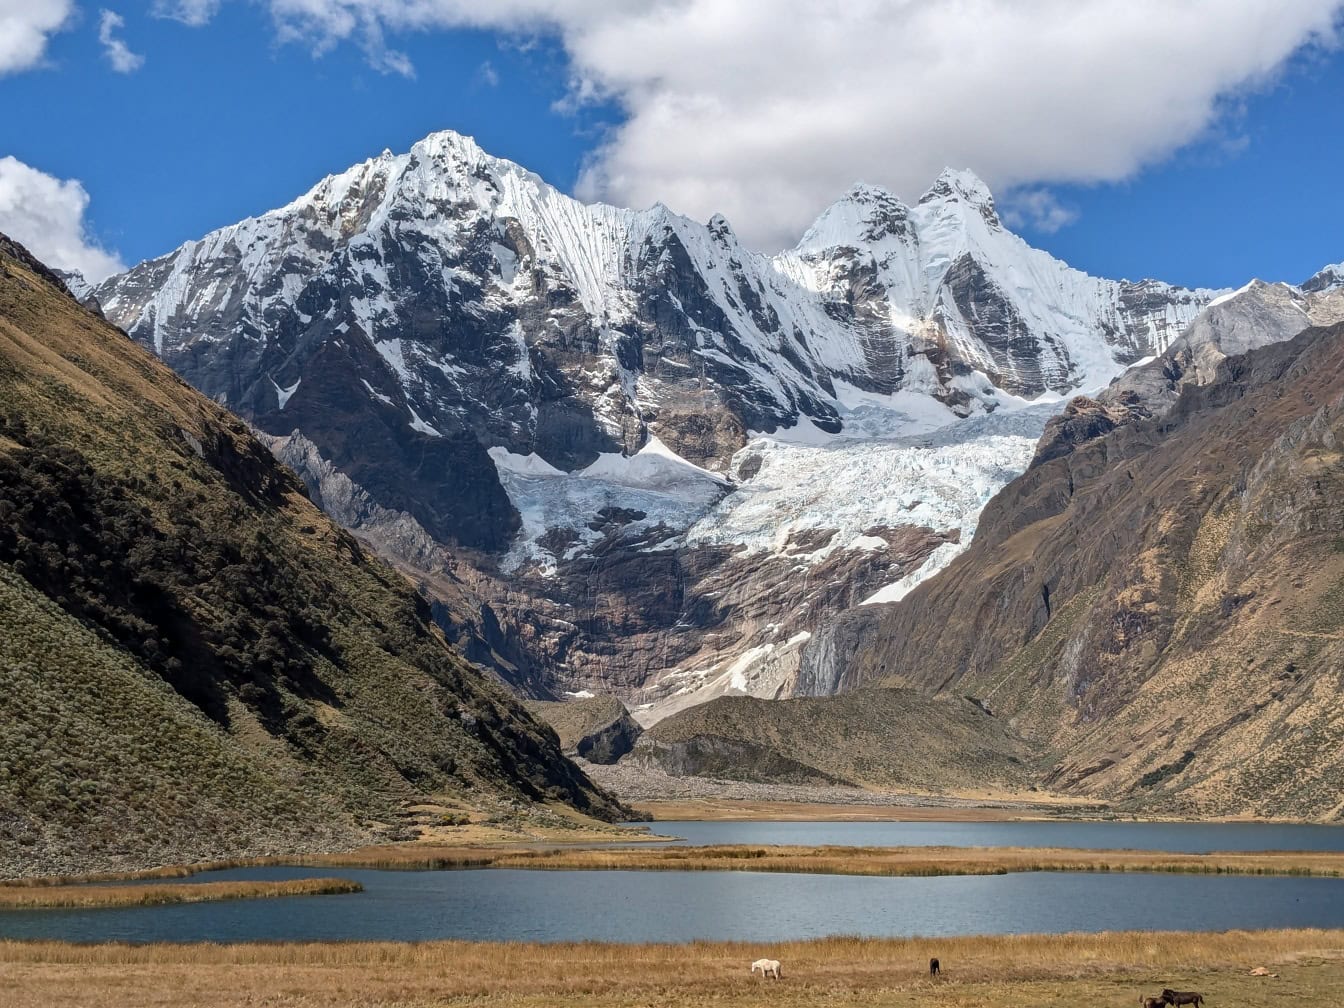 Λίμνη σε μια κοιλάδα με χιονισμένα βουνά στην Cordillera Huayhuash, μια οροσειρά στις Άνδεις στο Περού